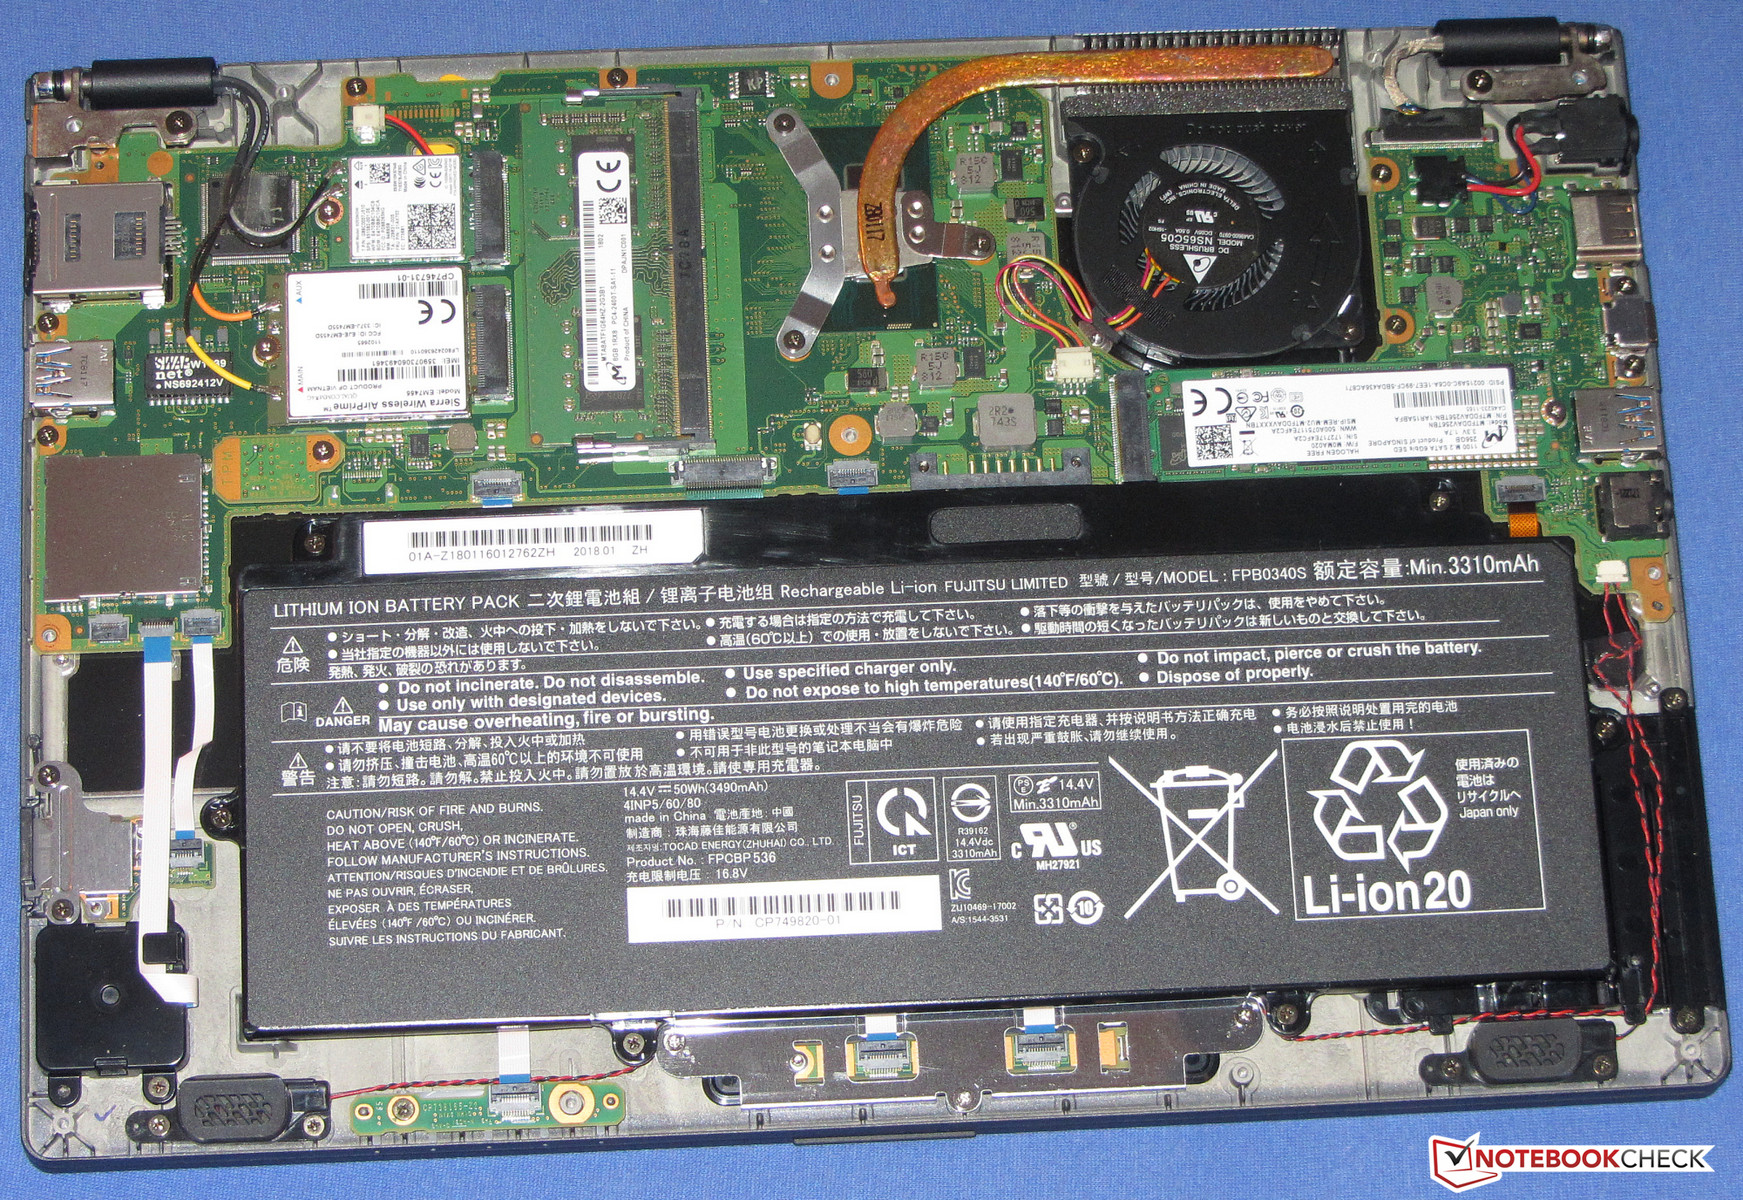 Fujitsu LifeBook U938 (i5-8250U, LTE, SSD, FHD) Subnotebook Review